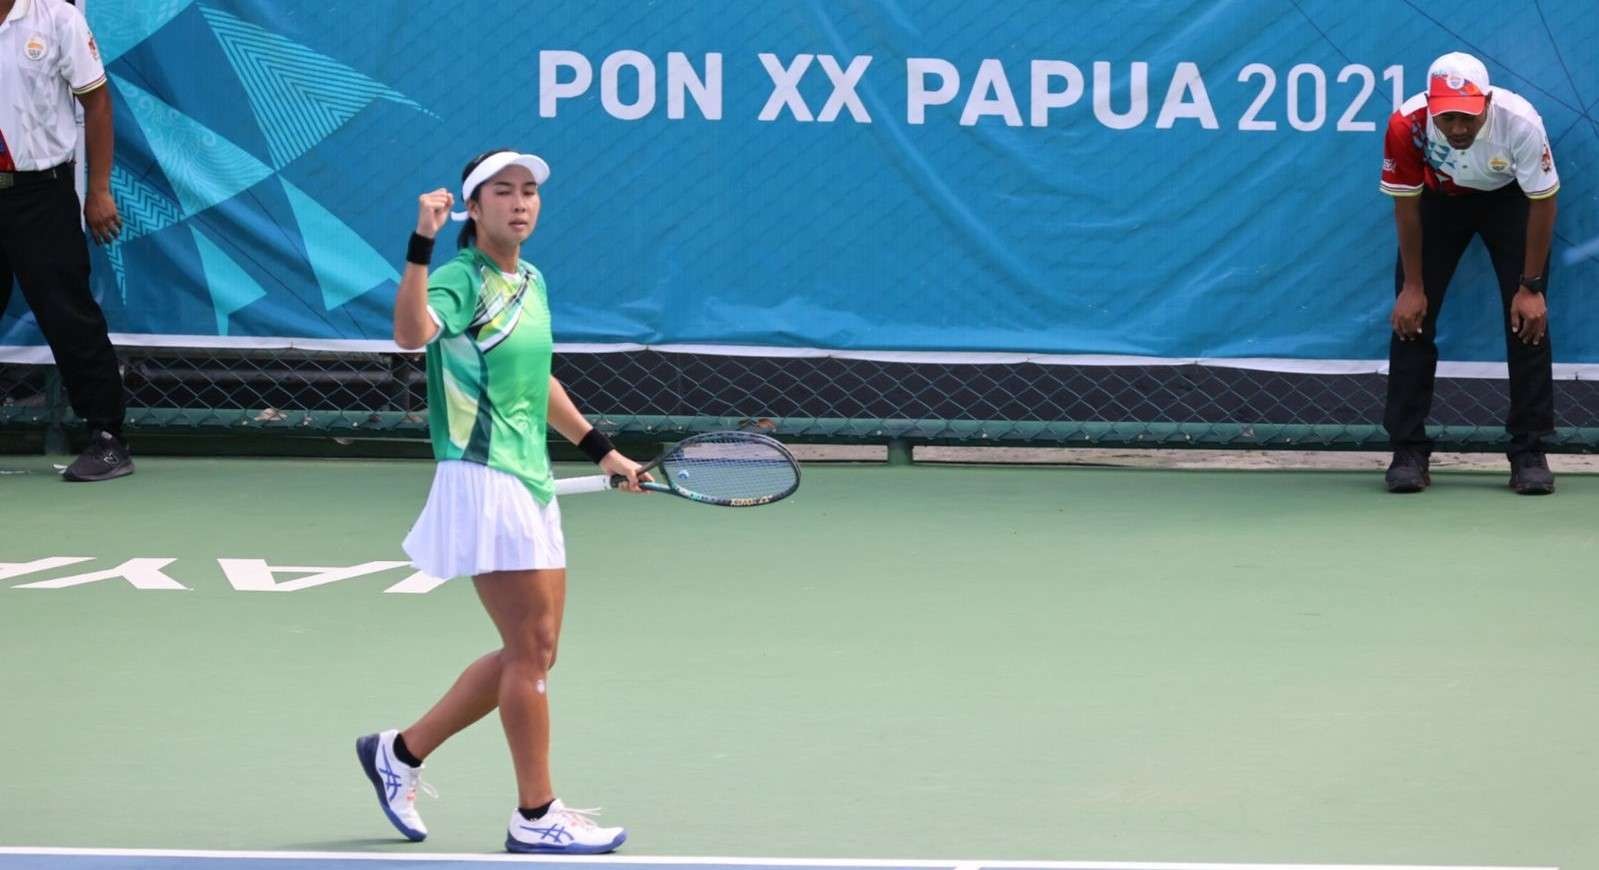 Atlet Tenis Putri Jatim, Aldila Sutjiadi saat tampil di PON XX 2021 Papua. (Foto: Istimewa)